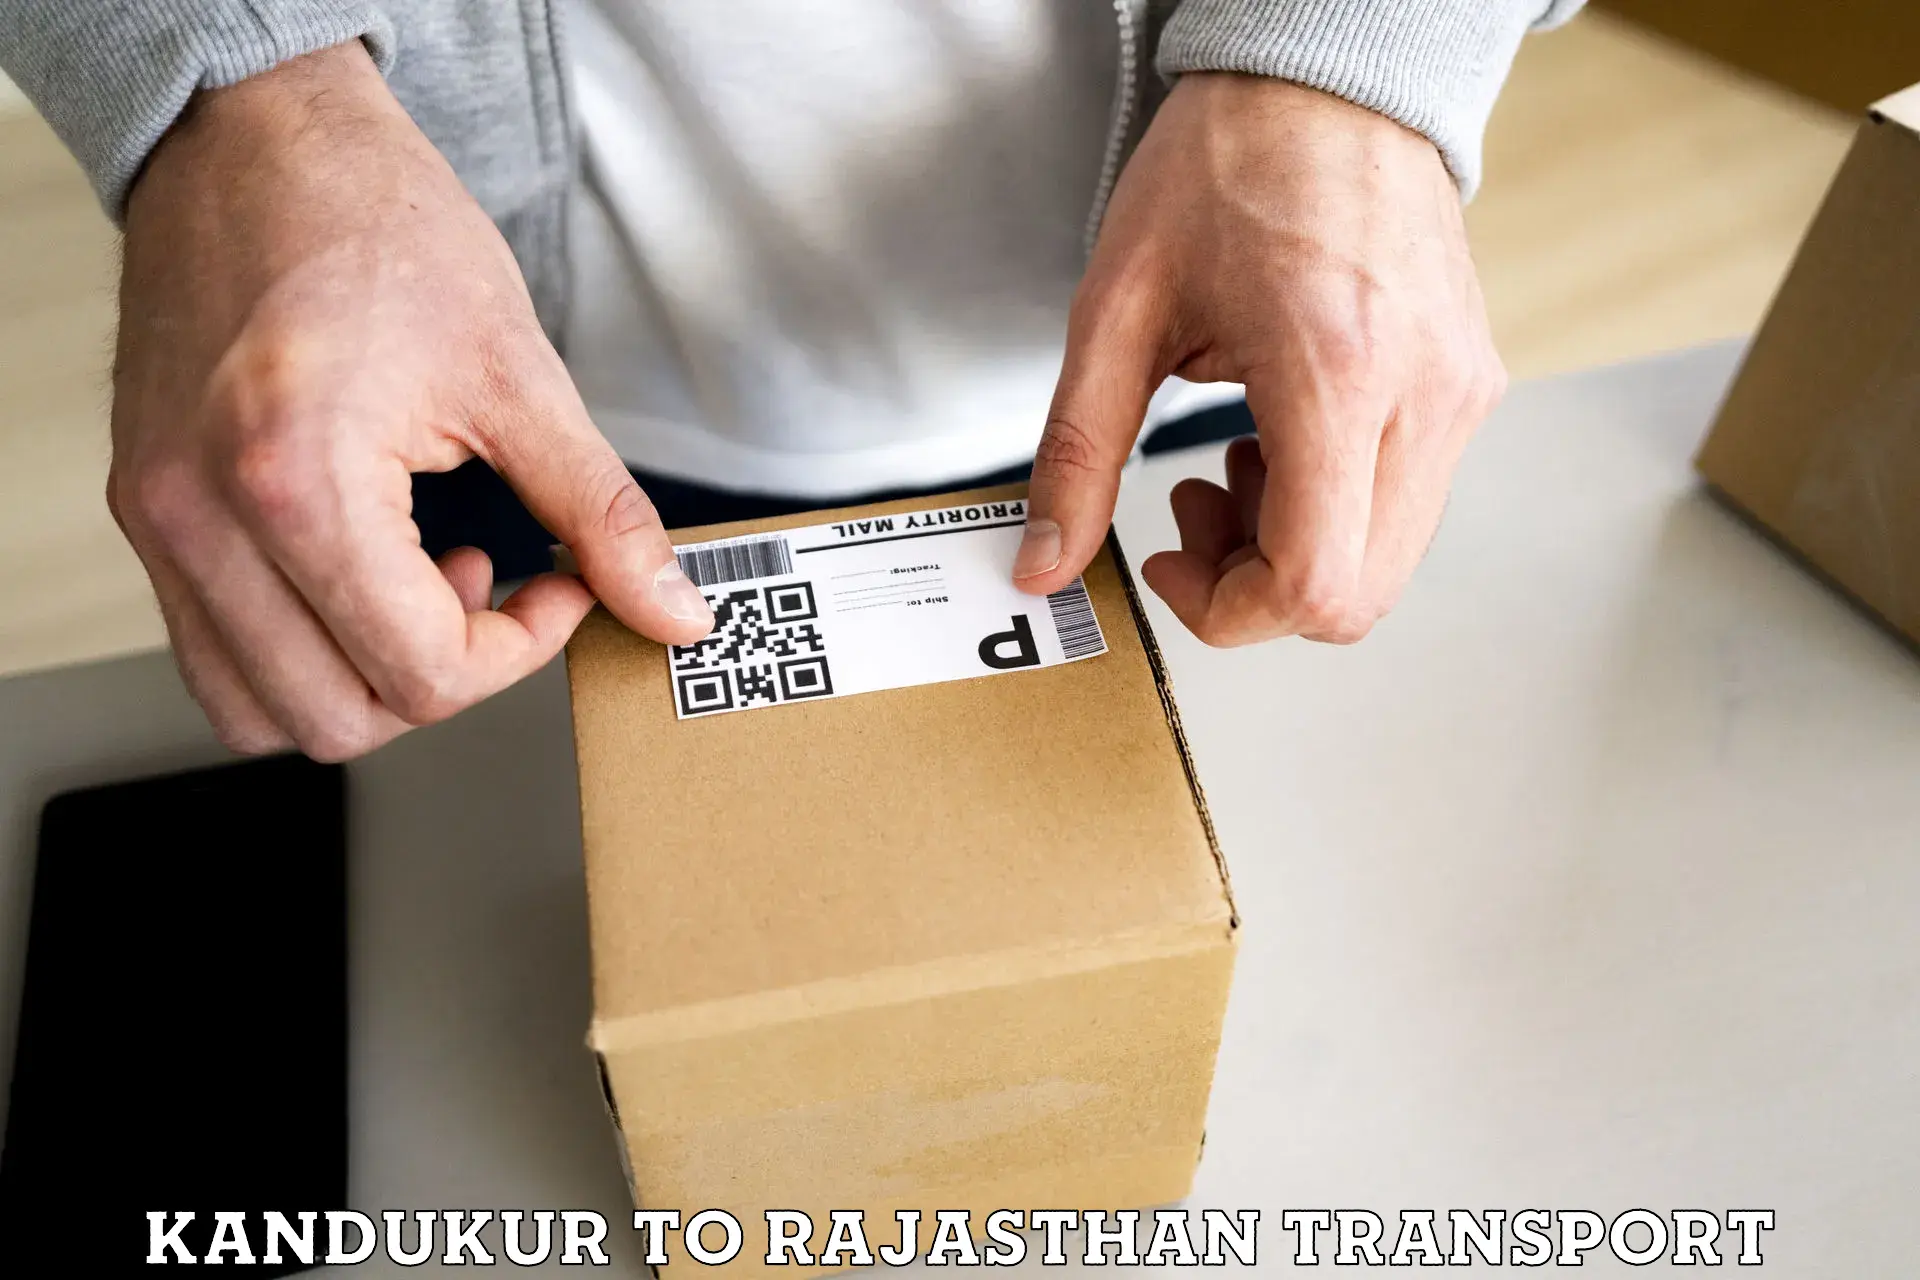 Daily parcel service transport Kandukur to Jhunjhunu